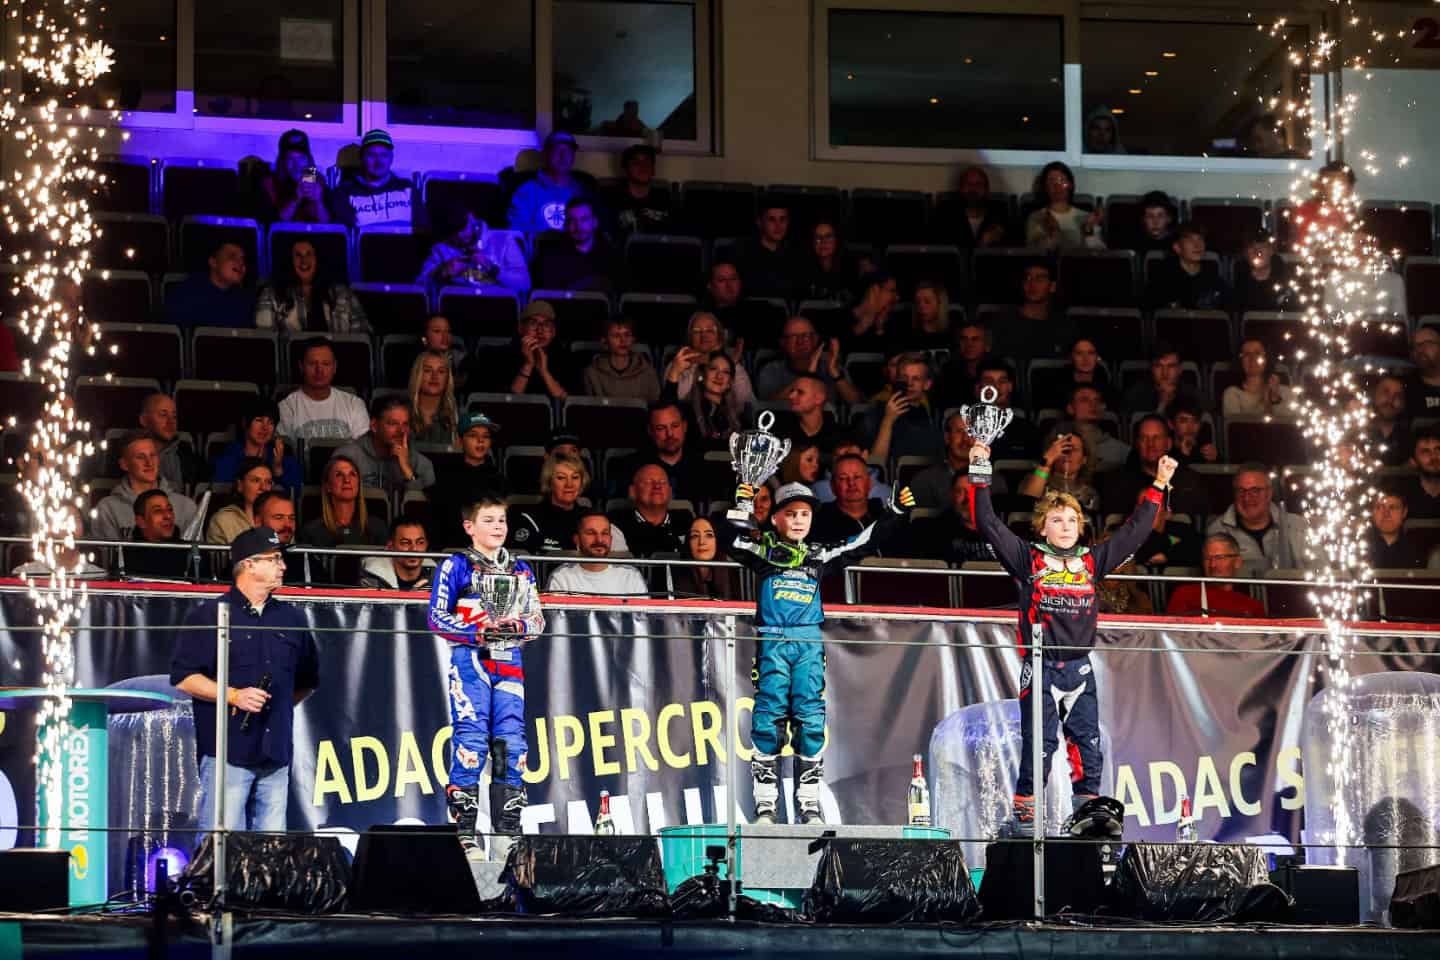 PM ADAC Westfalen e.V. - ADAC Supercross Dortmund